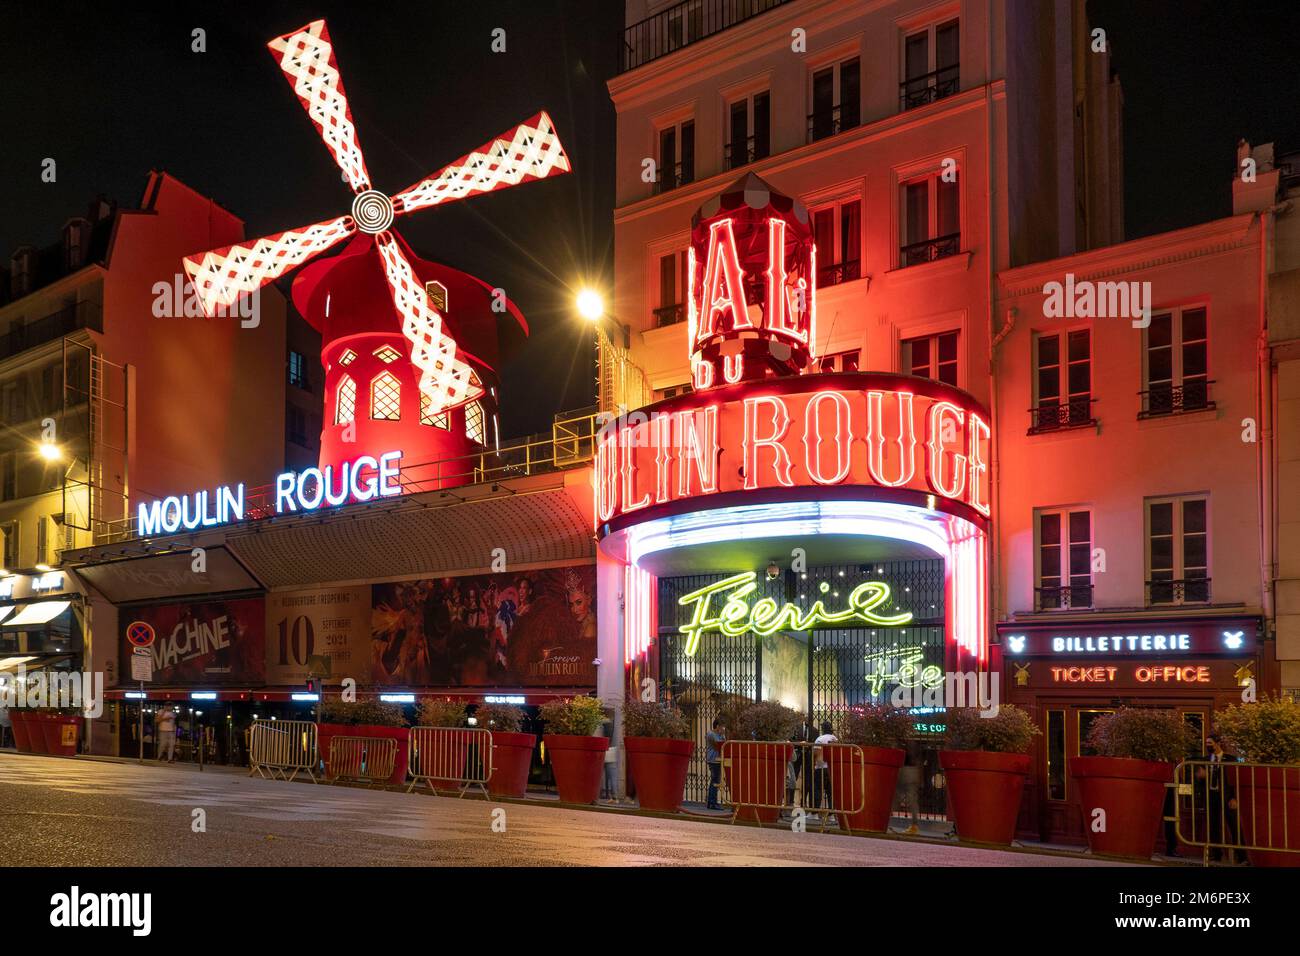 Francia, París, Teatro Moulin Rouge Por la noche, Moulin Rouge es un cabaret en París, más conocido como el lugar de nacimiento de la forma moderna de la danza Can-Can Foto de stock